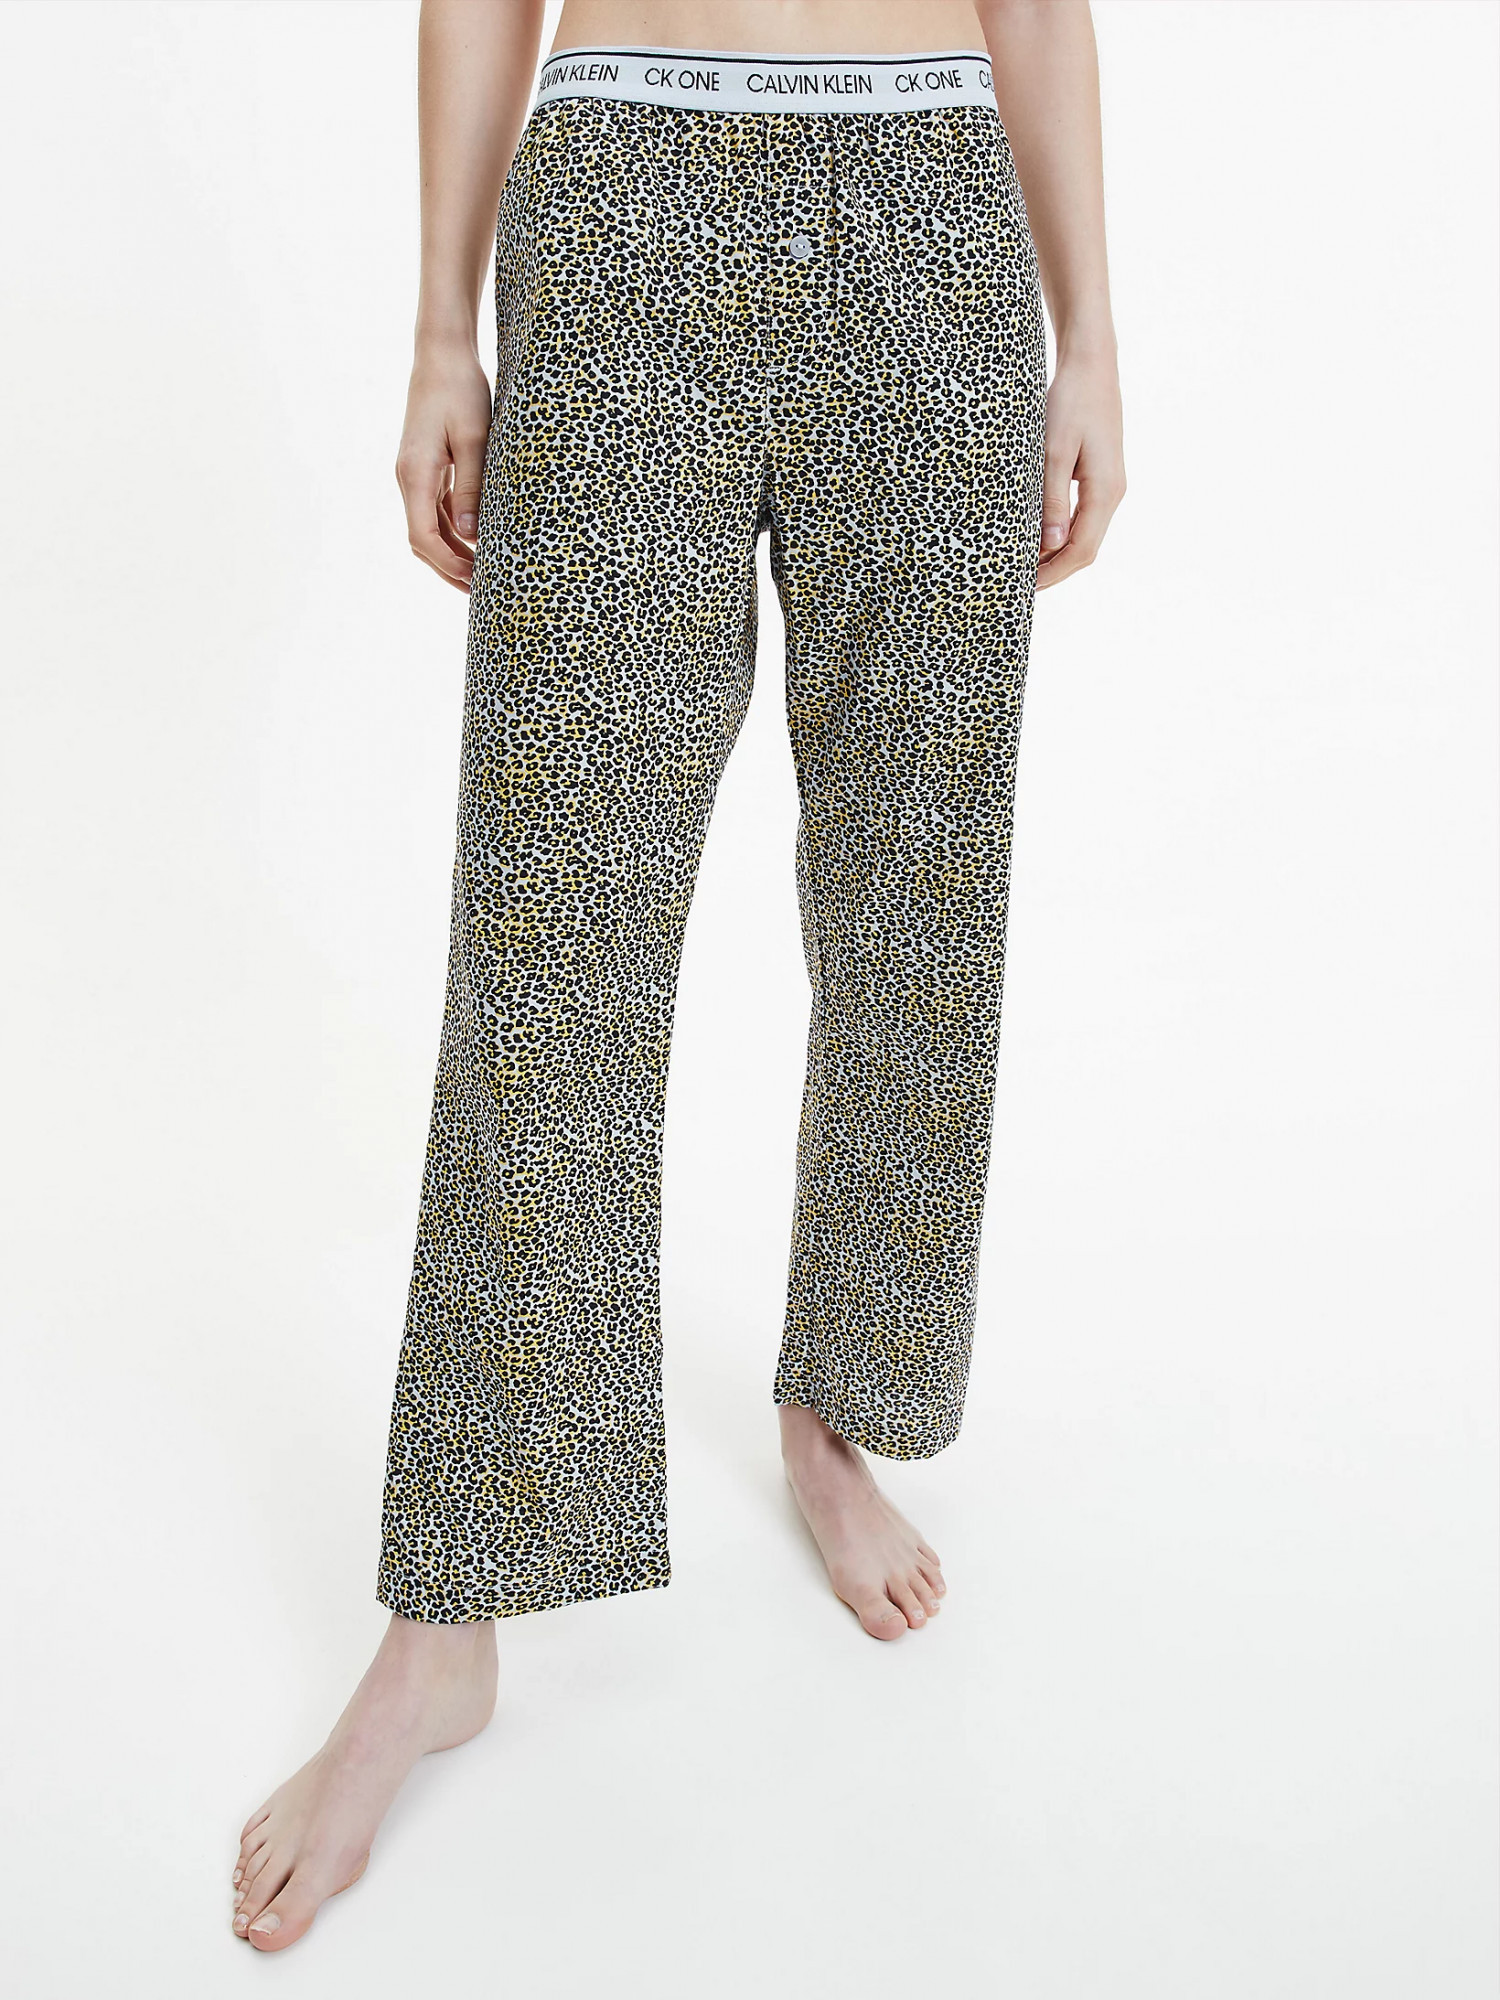 Dámské pyžamové kalhoty QS6433E - V4L Fialová se zvířecím vzorem - Calvin Klein S fialový vzor